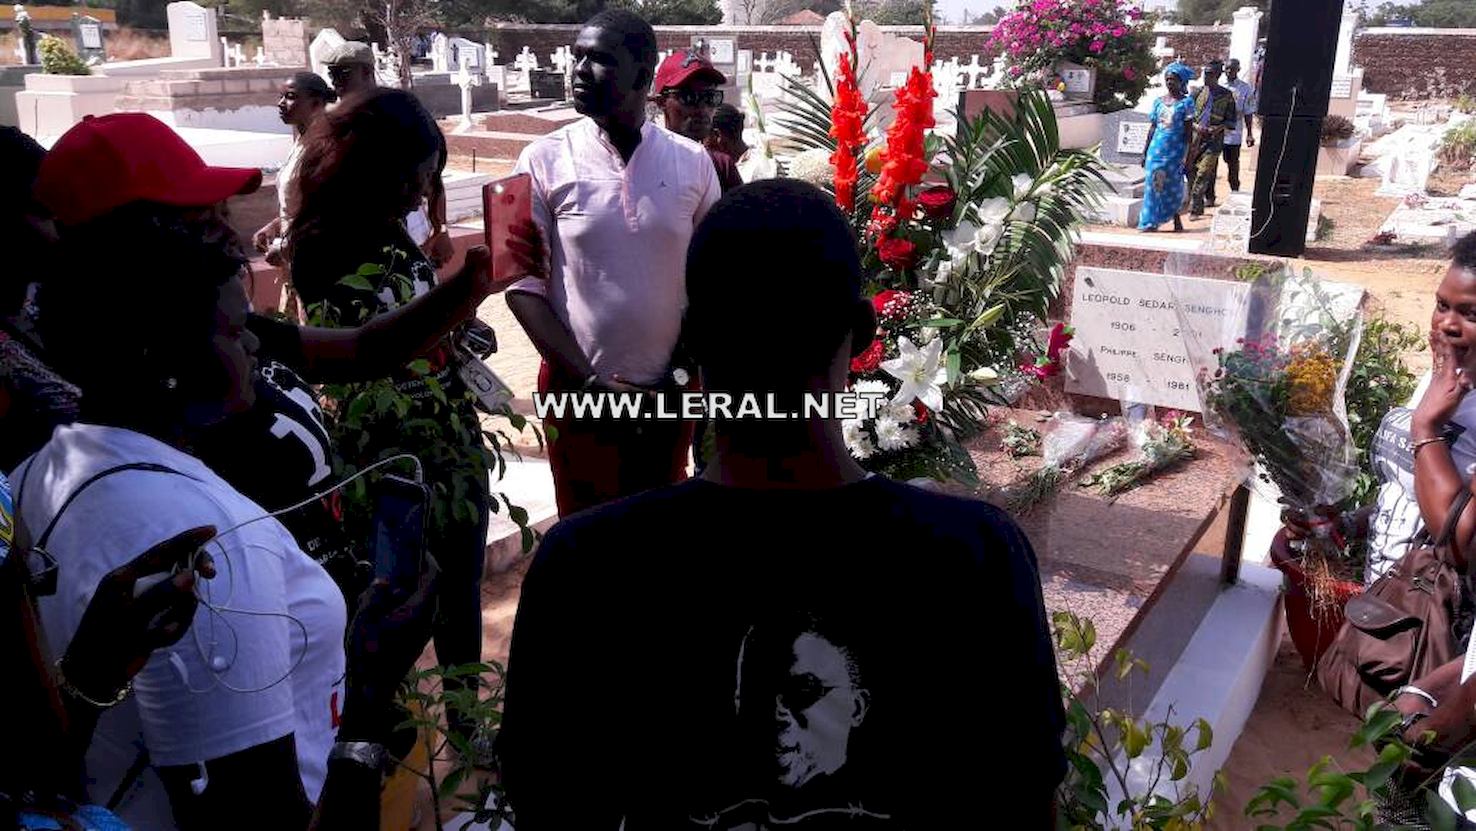 (Photos) Les jeunes socialistes se recueillant sur la tombe de Senghor en ce jour de Toussaint avec leurs tee shirt "Liberez khalifa".